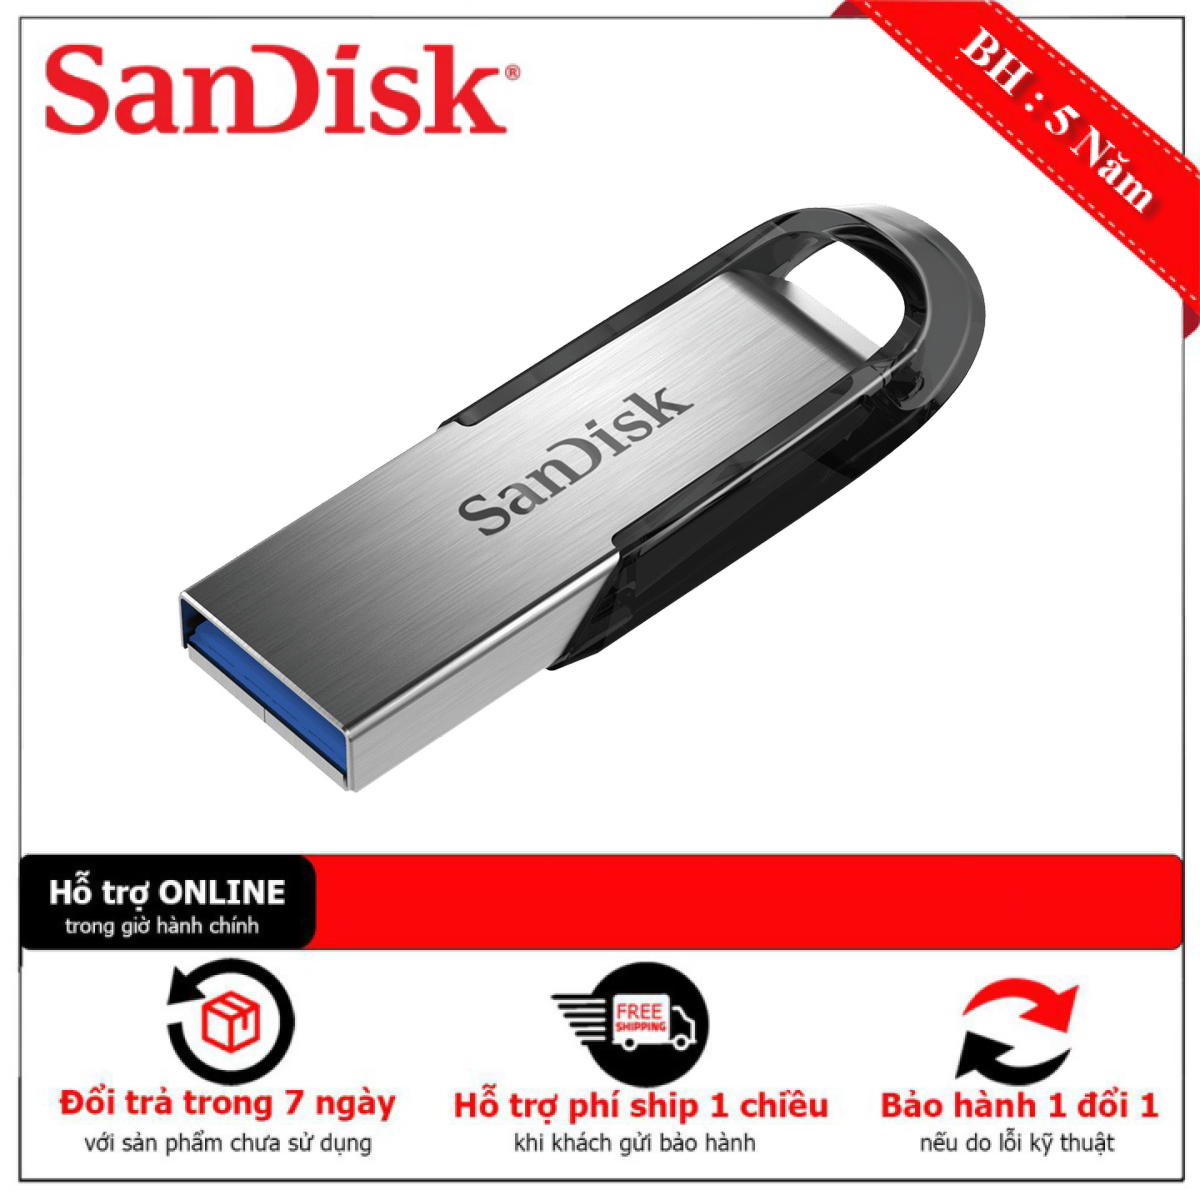 [Bảo Hành 1 Đổi 1] USB 3.0 SanDisk Ultra Flair CZ73 16GB 130MB/s SDCZ73-016G-G46 - Hãng Phân Phối Chính Thức